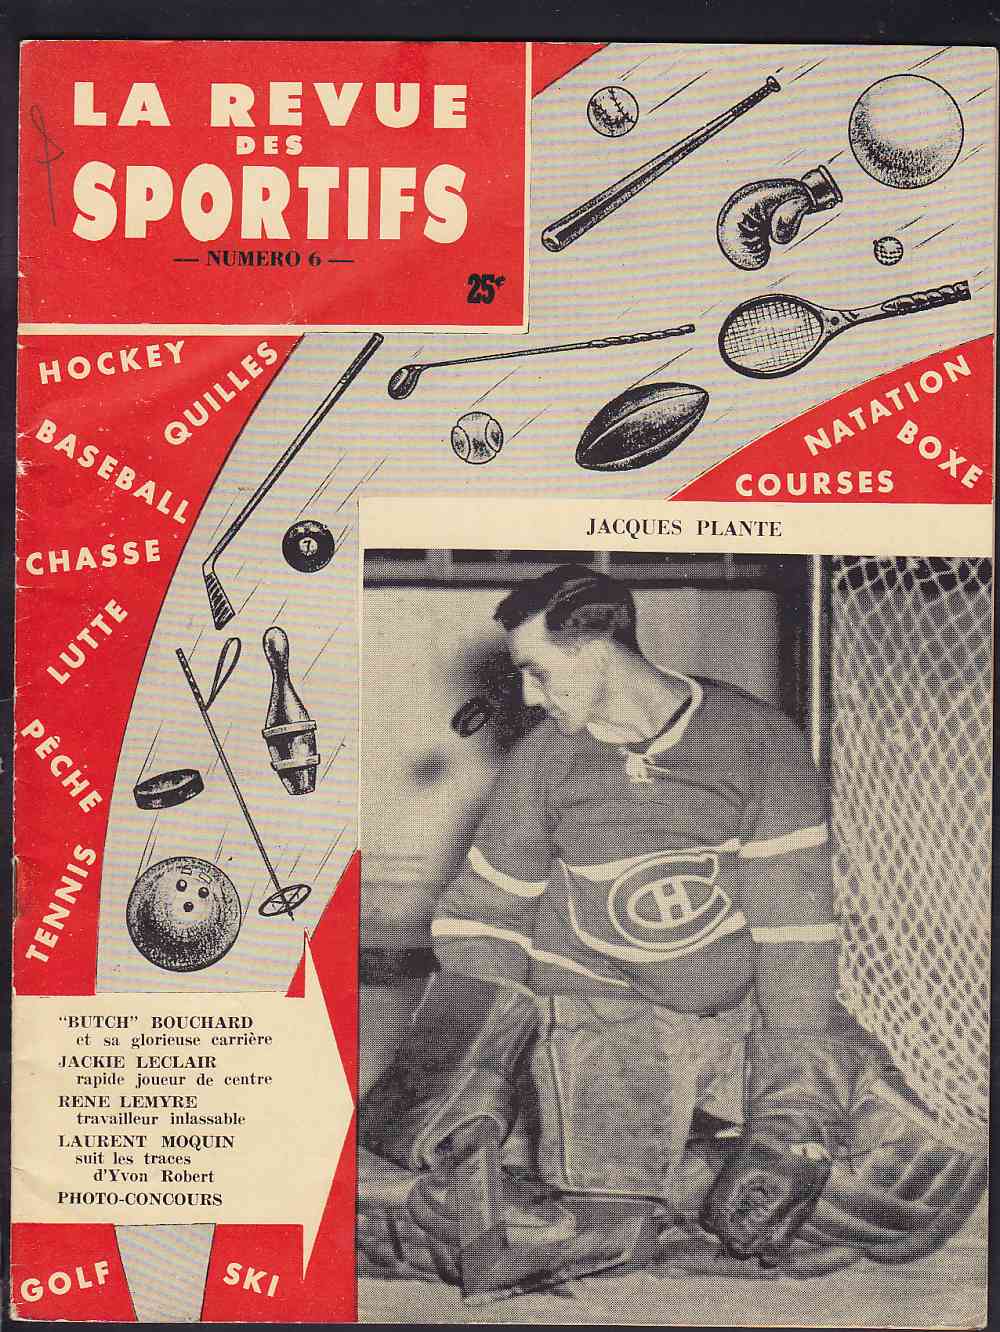 1956 LA REVUE DES SPORTIFS FULL MAGAZINE J. PLANTE ON COVER photo